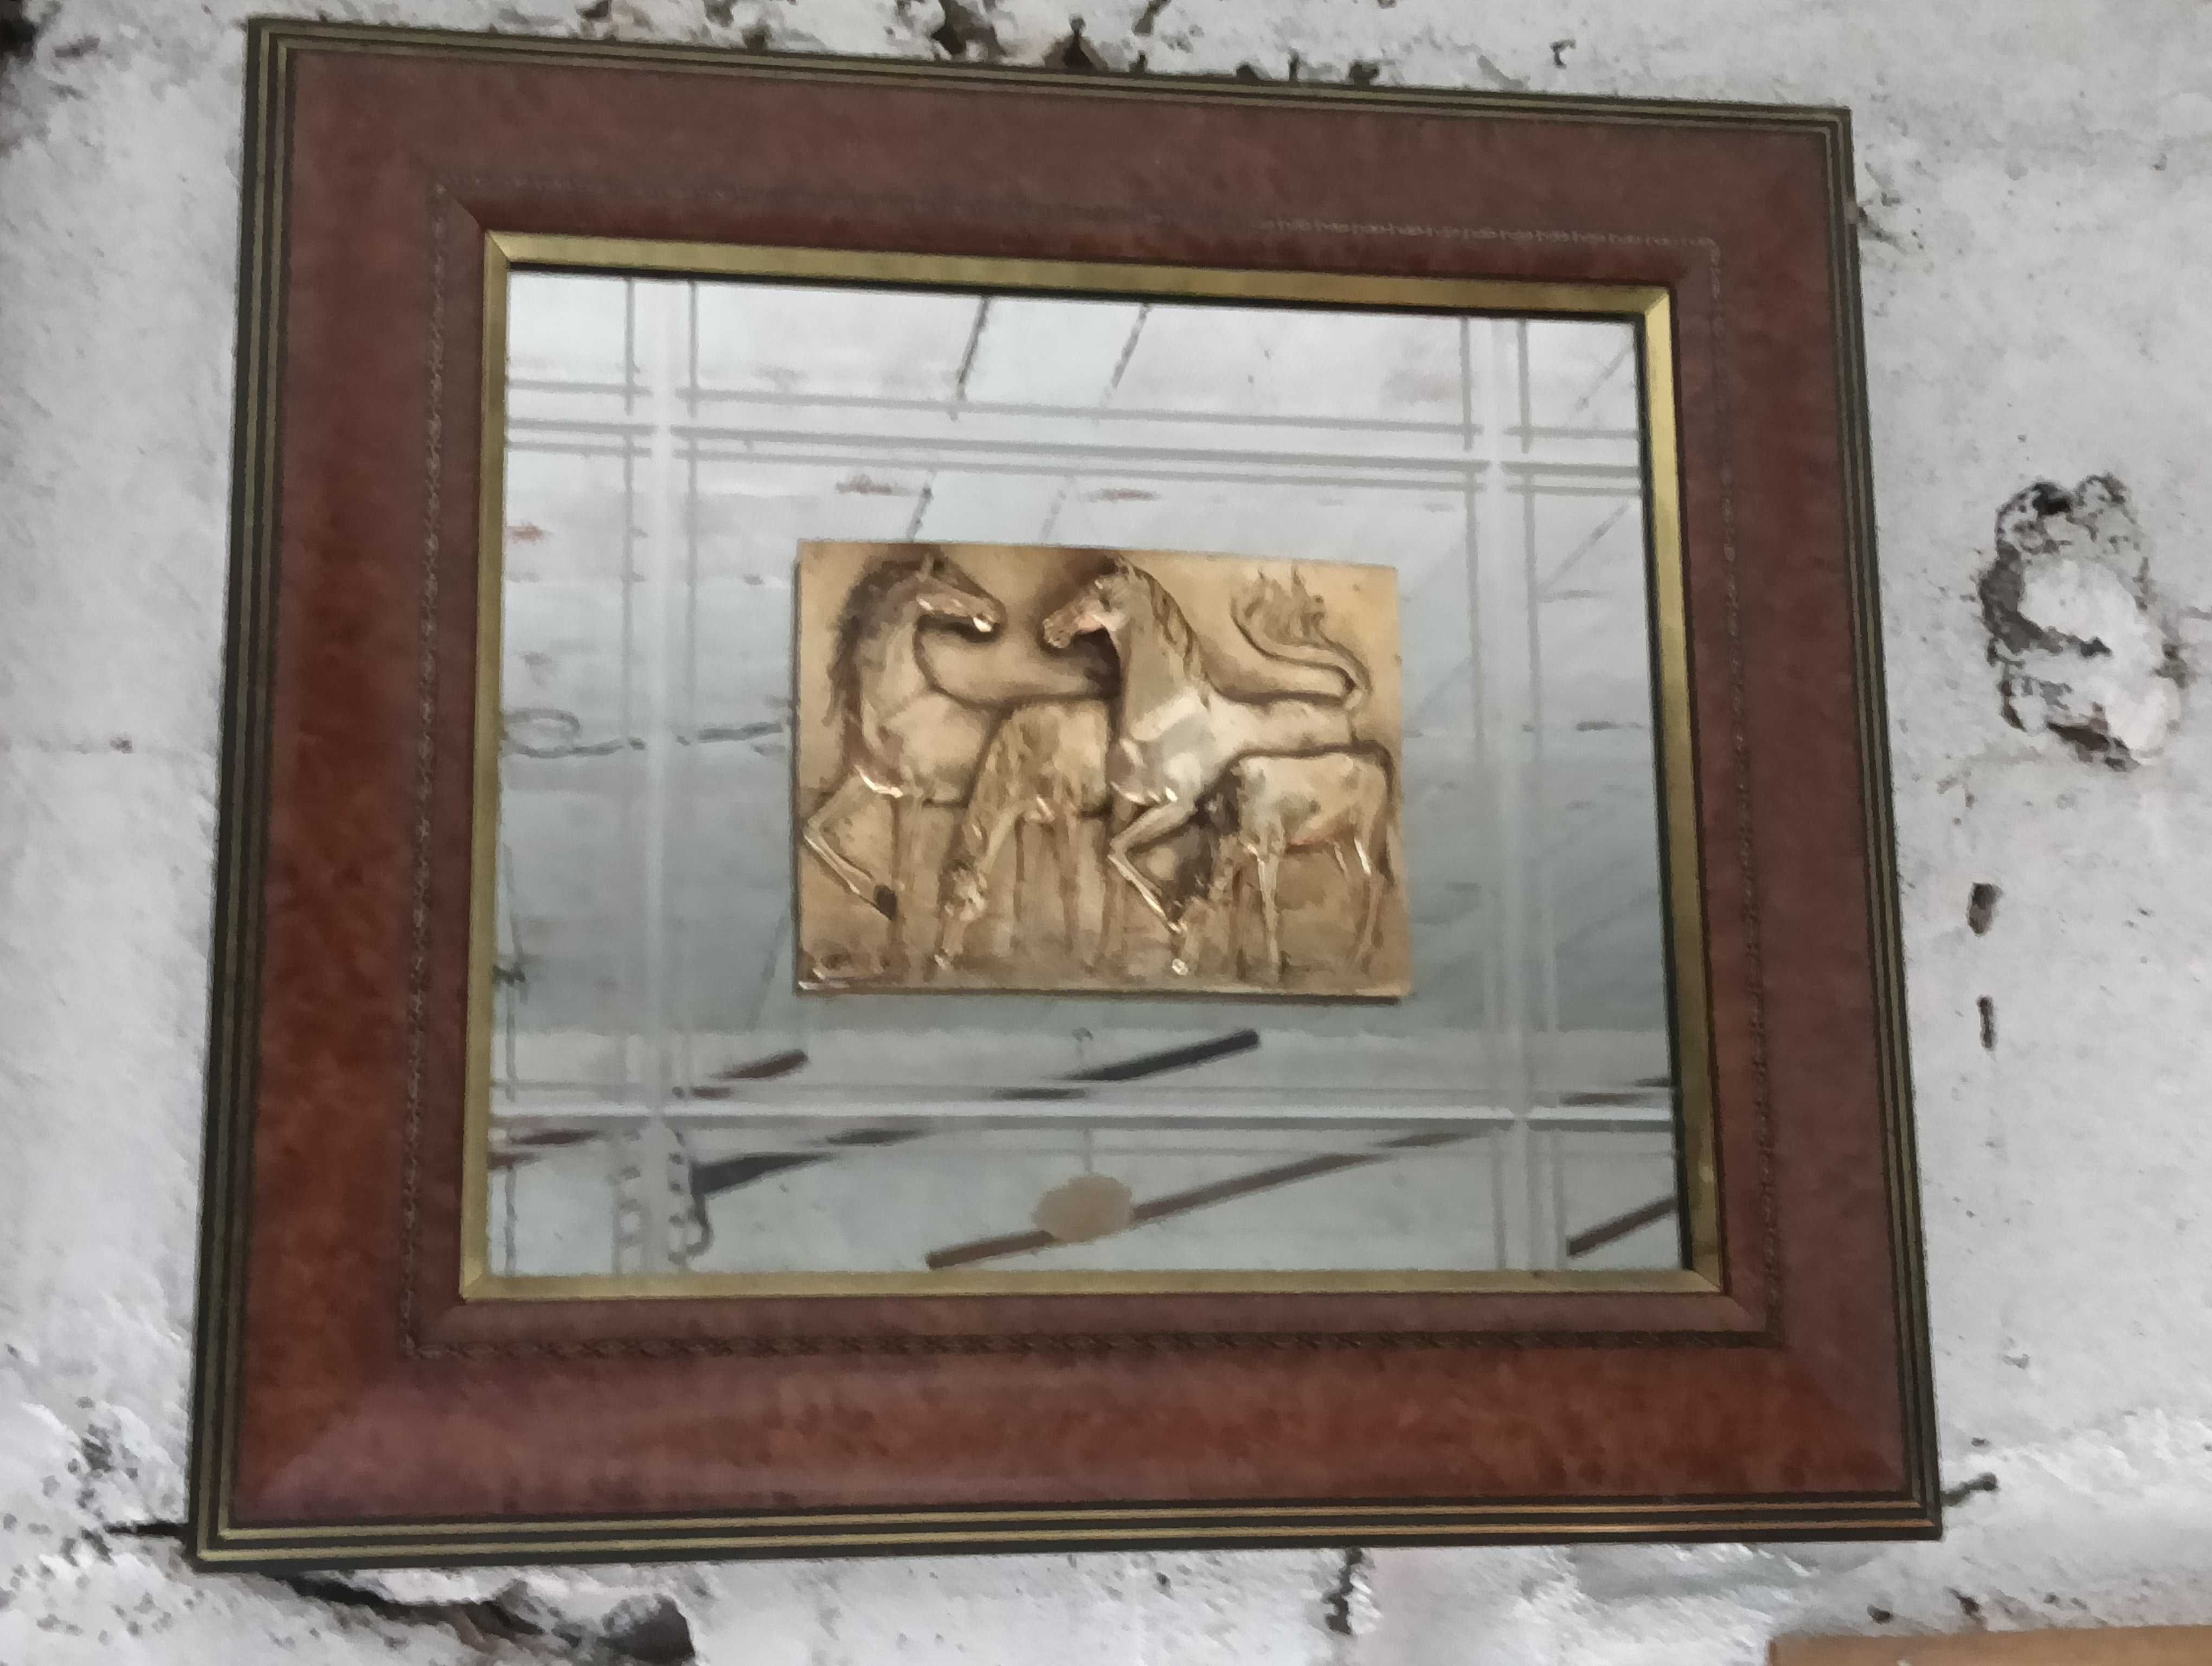 Quadro espelhado com escultura de cavalos em relevo